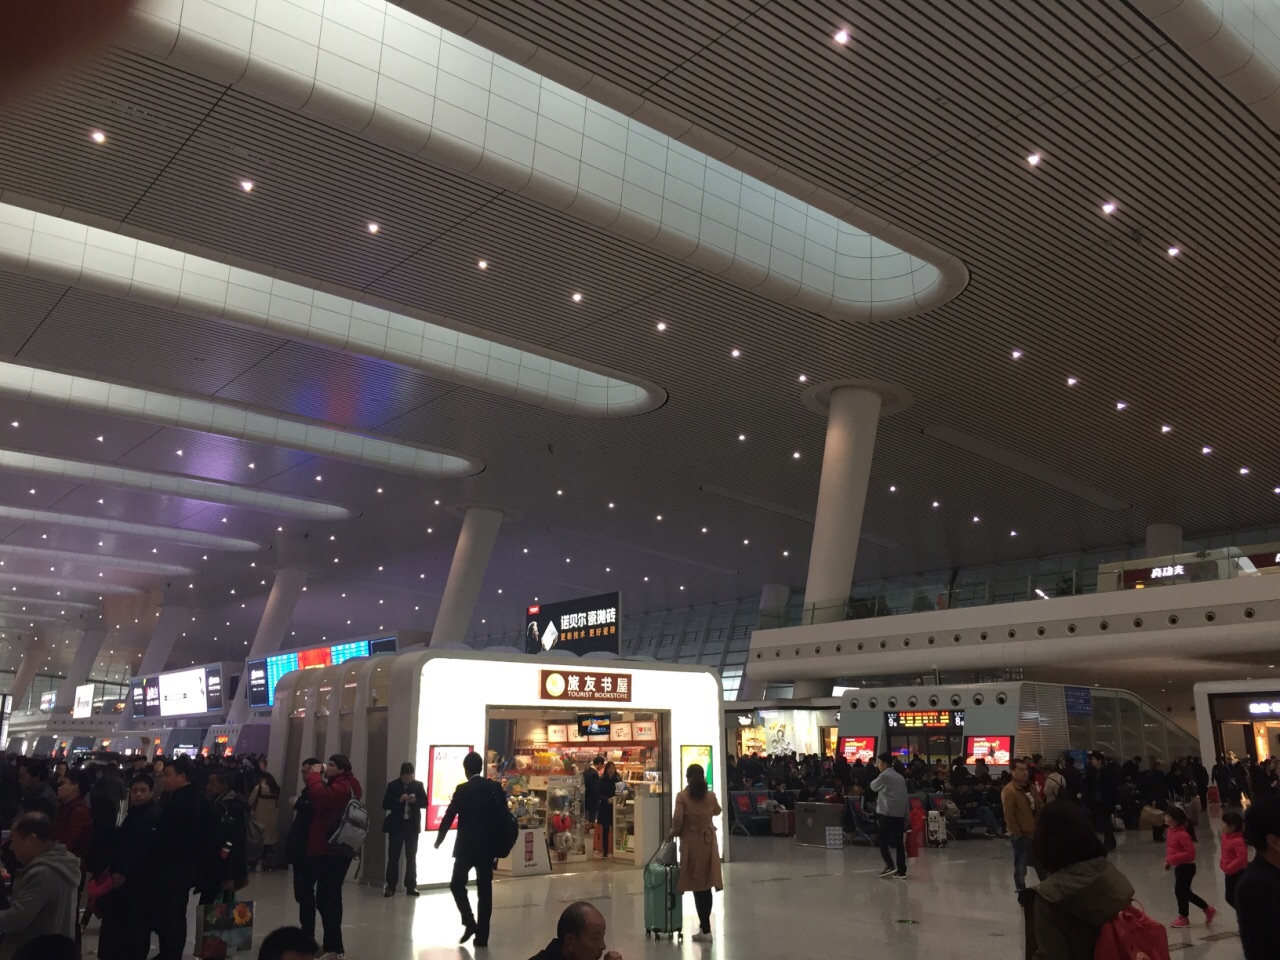 杭州东站内部图片